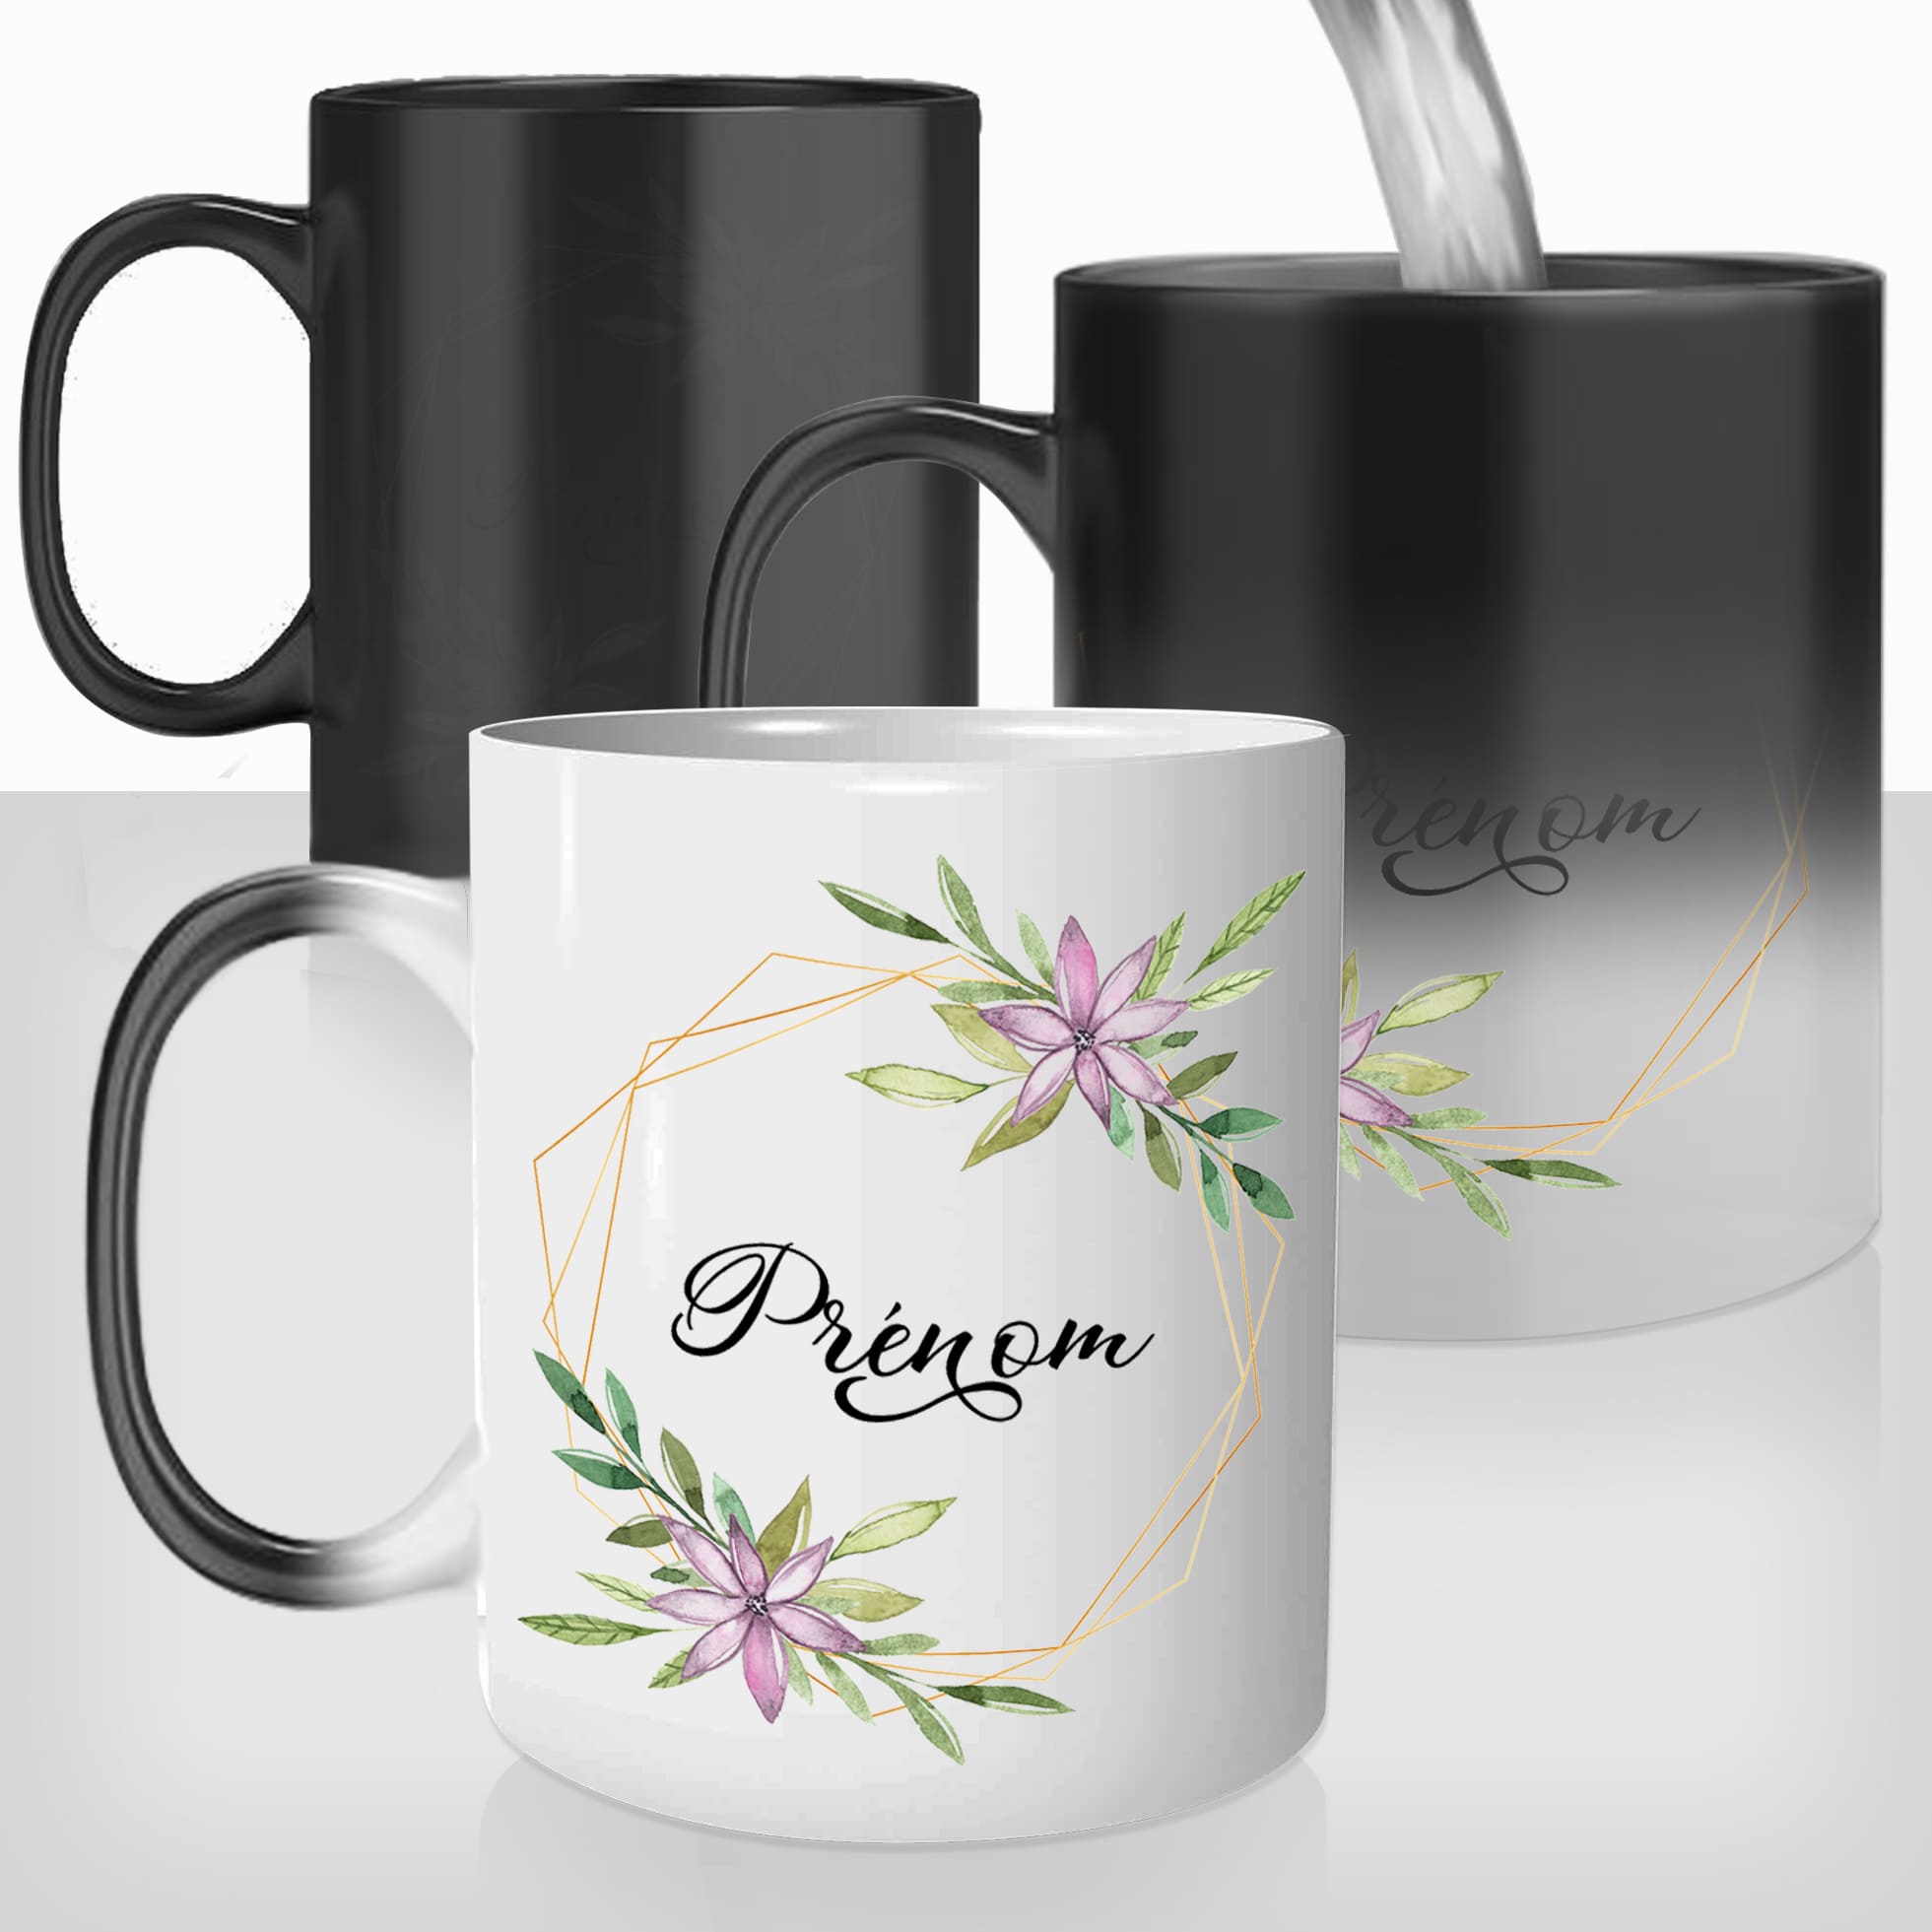 mug-magique-tasse-magic-thermo-reactif-femme-prénom-en-fleurs-photo-personnalisable-mignon-offrir-un-cadeau-original-fun